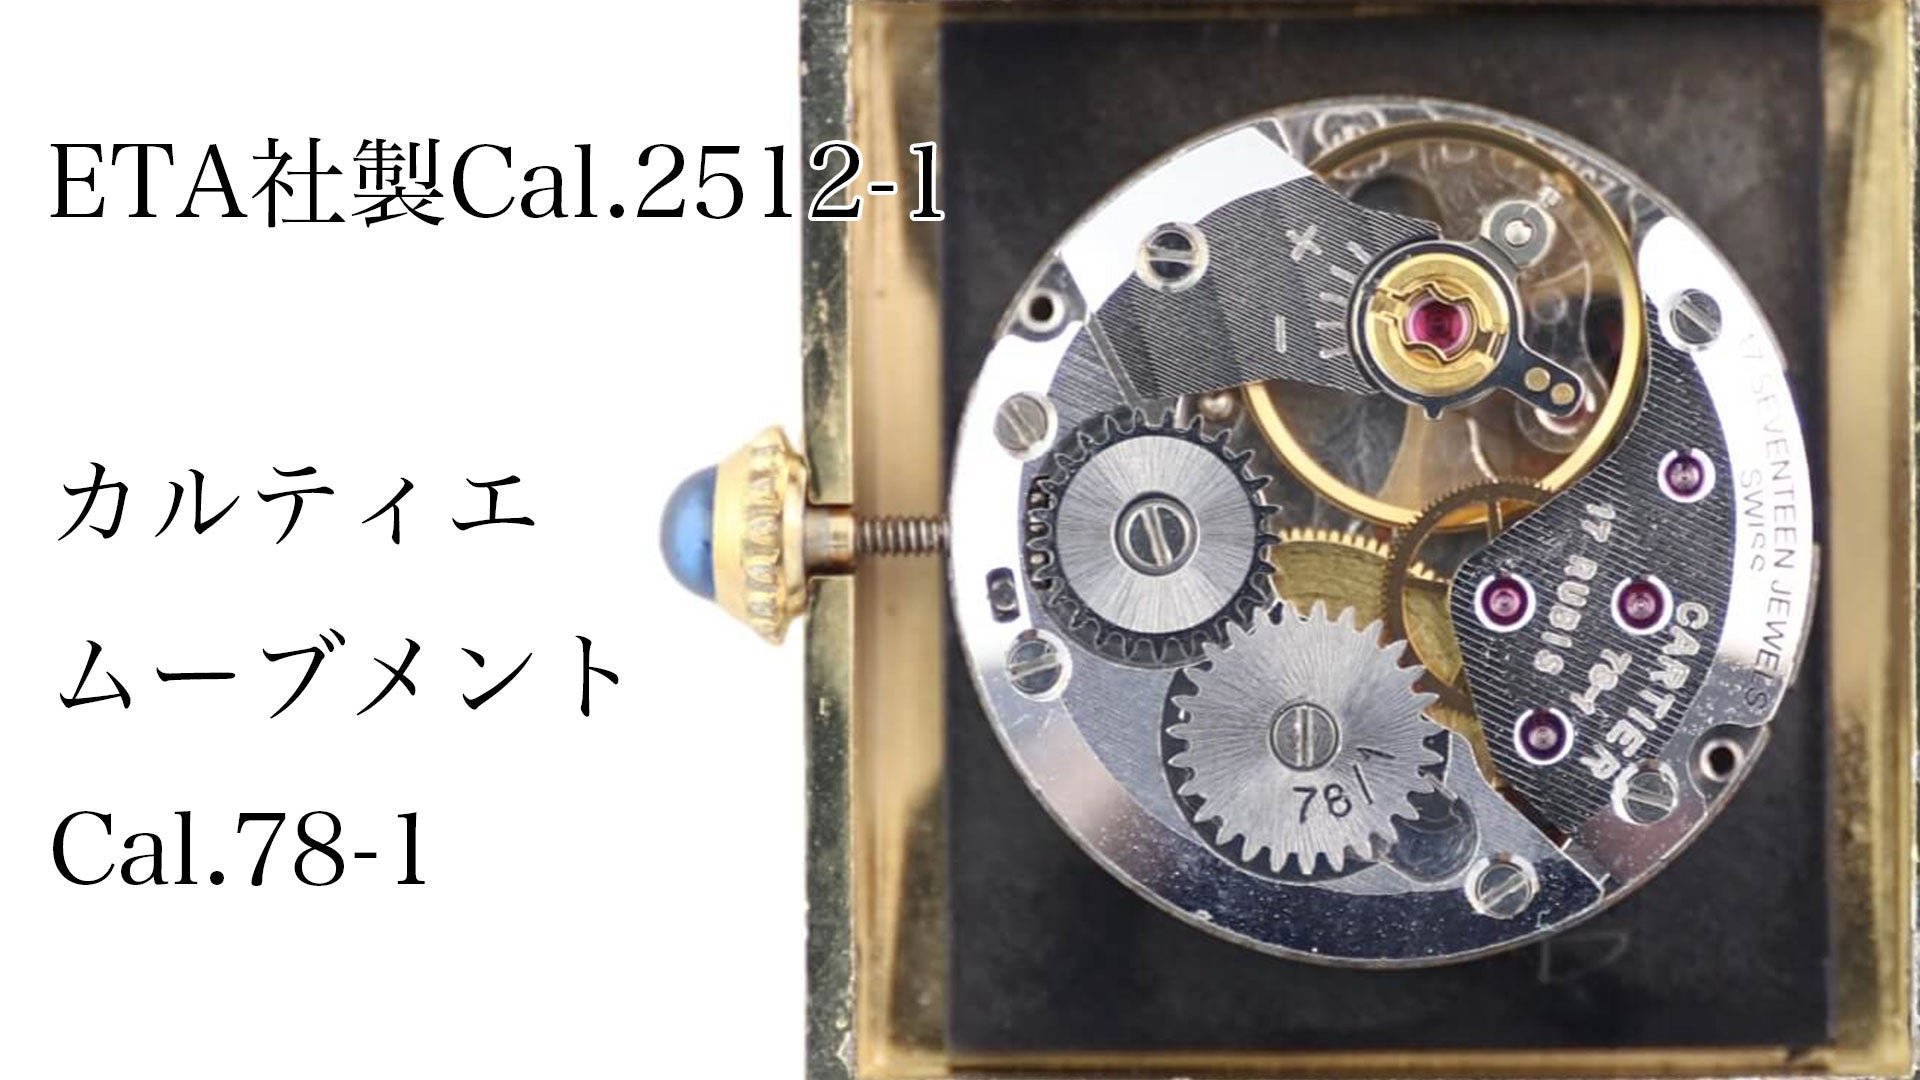 ETA Cal.2512-1 Cartier Movement Cal.78-1